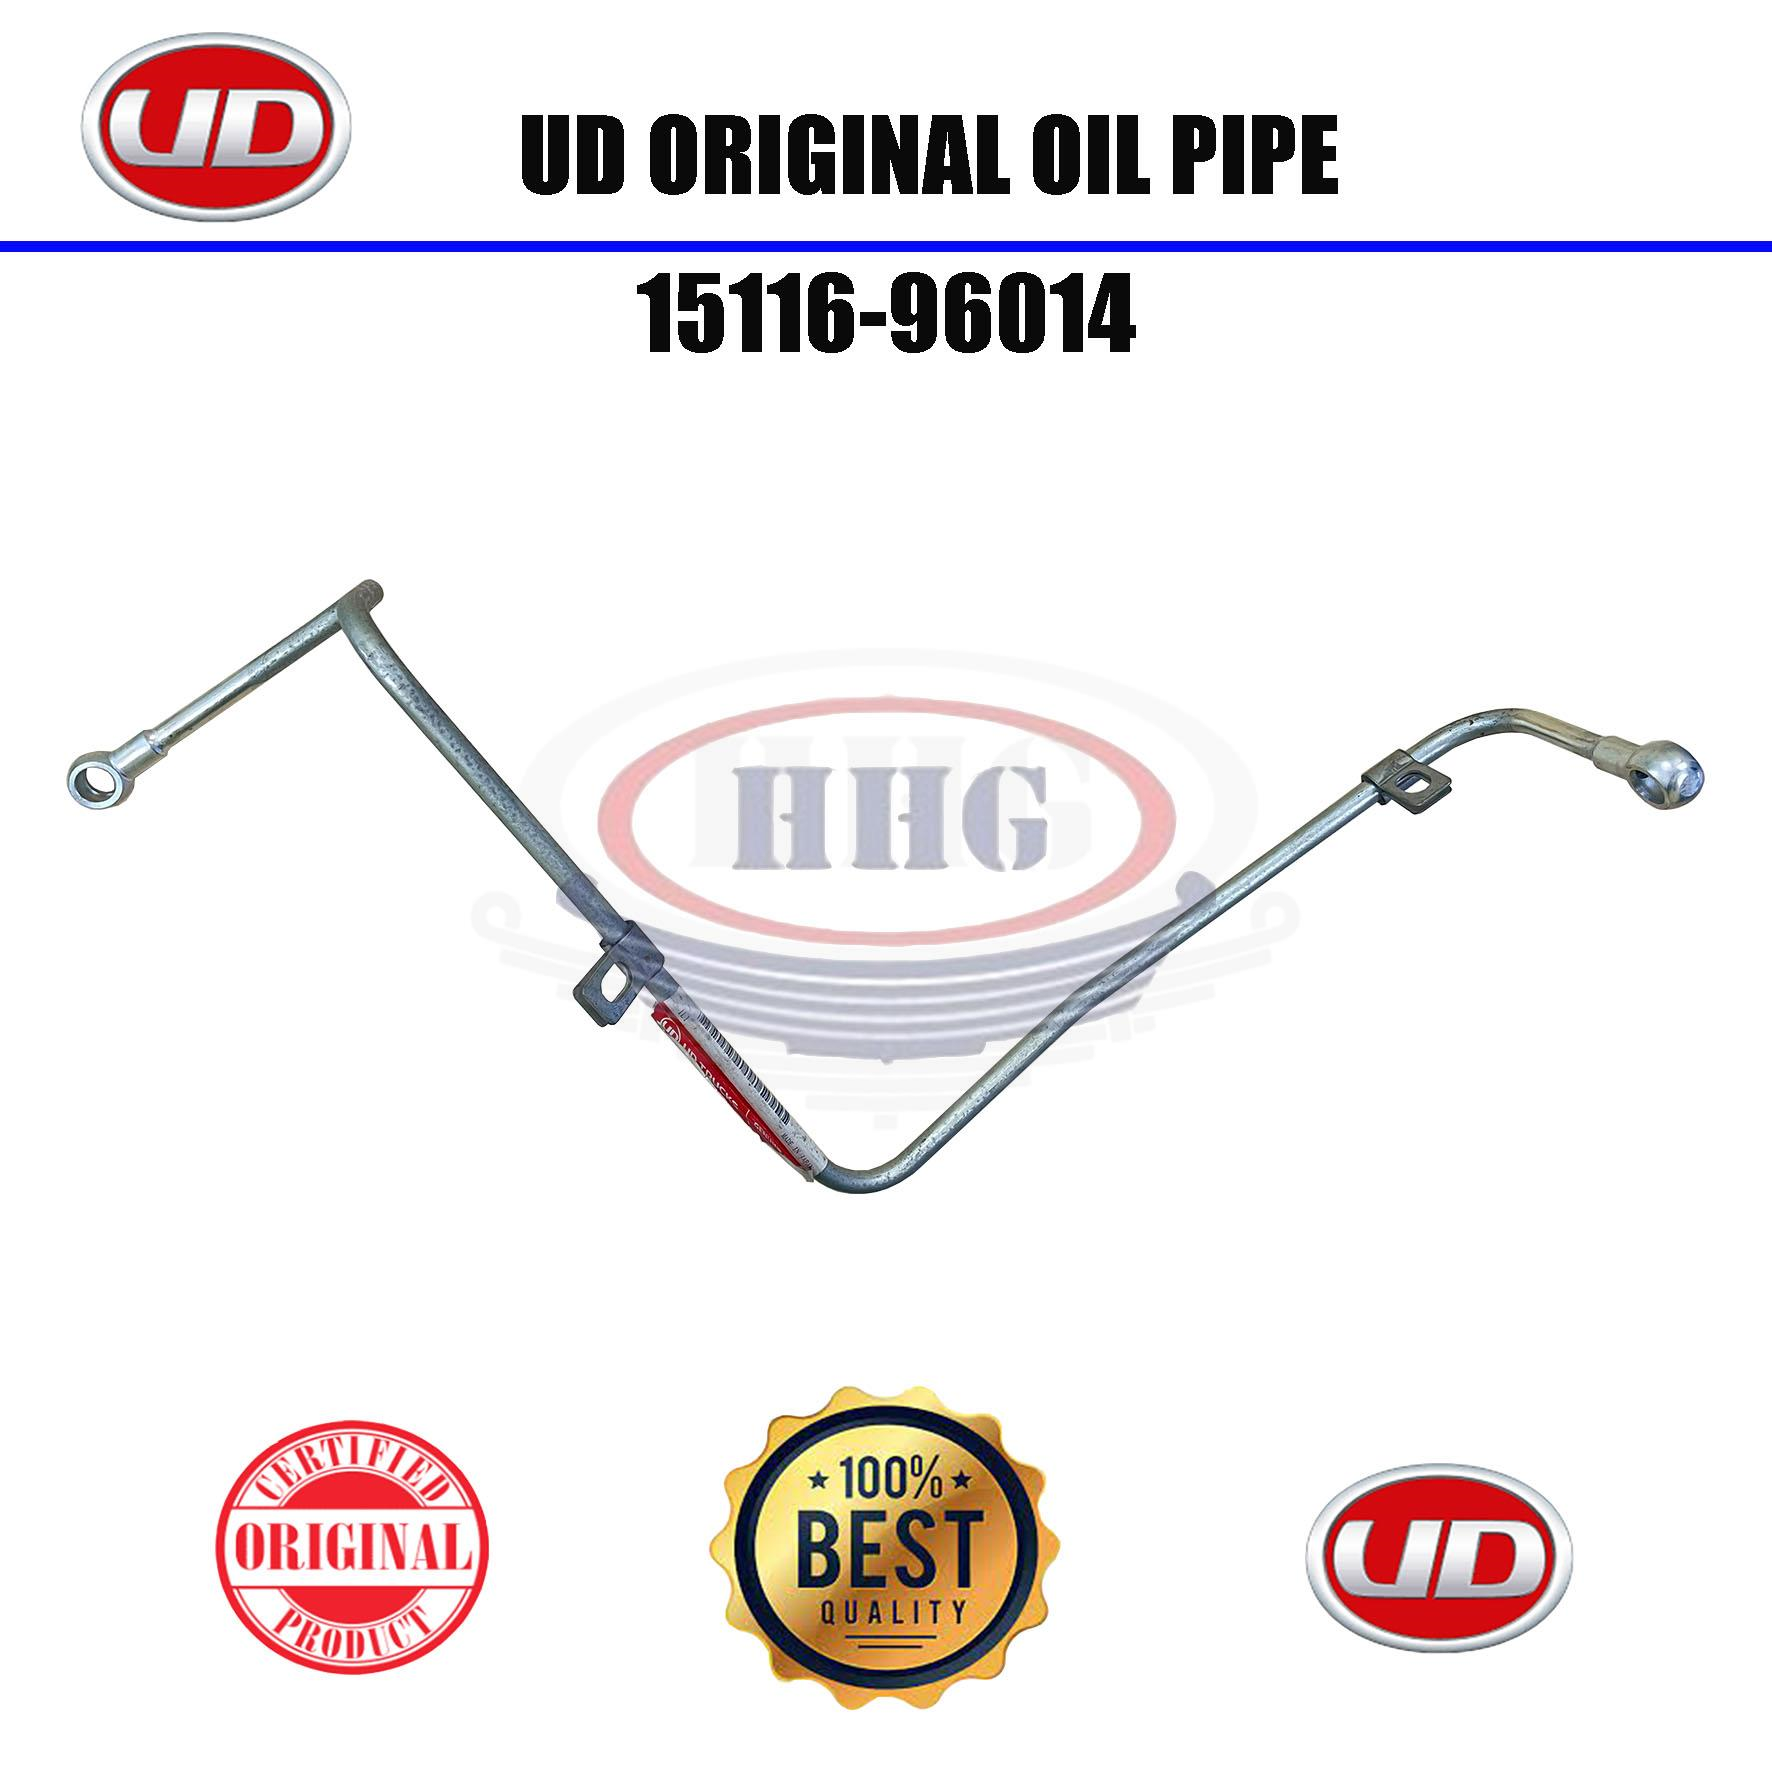 UD Original Oil Pipe (15116-96014)